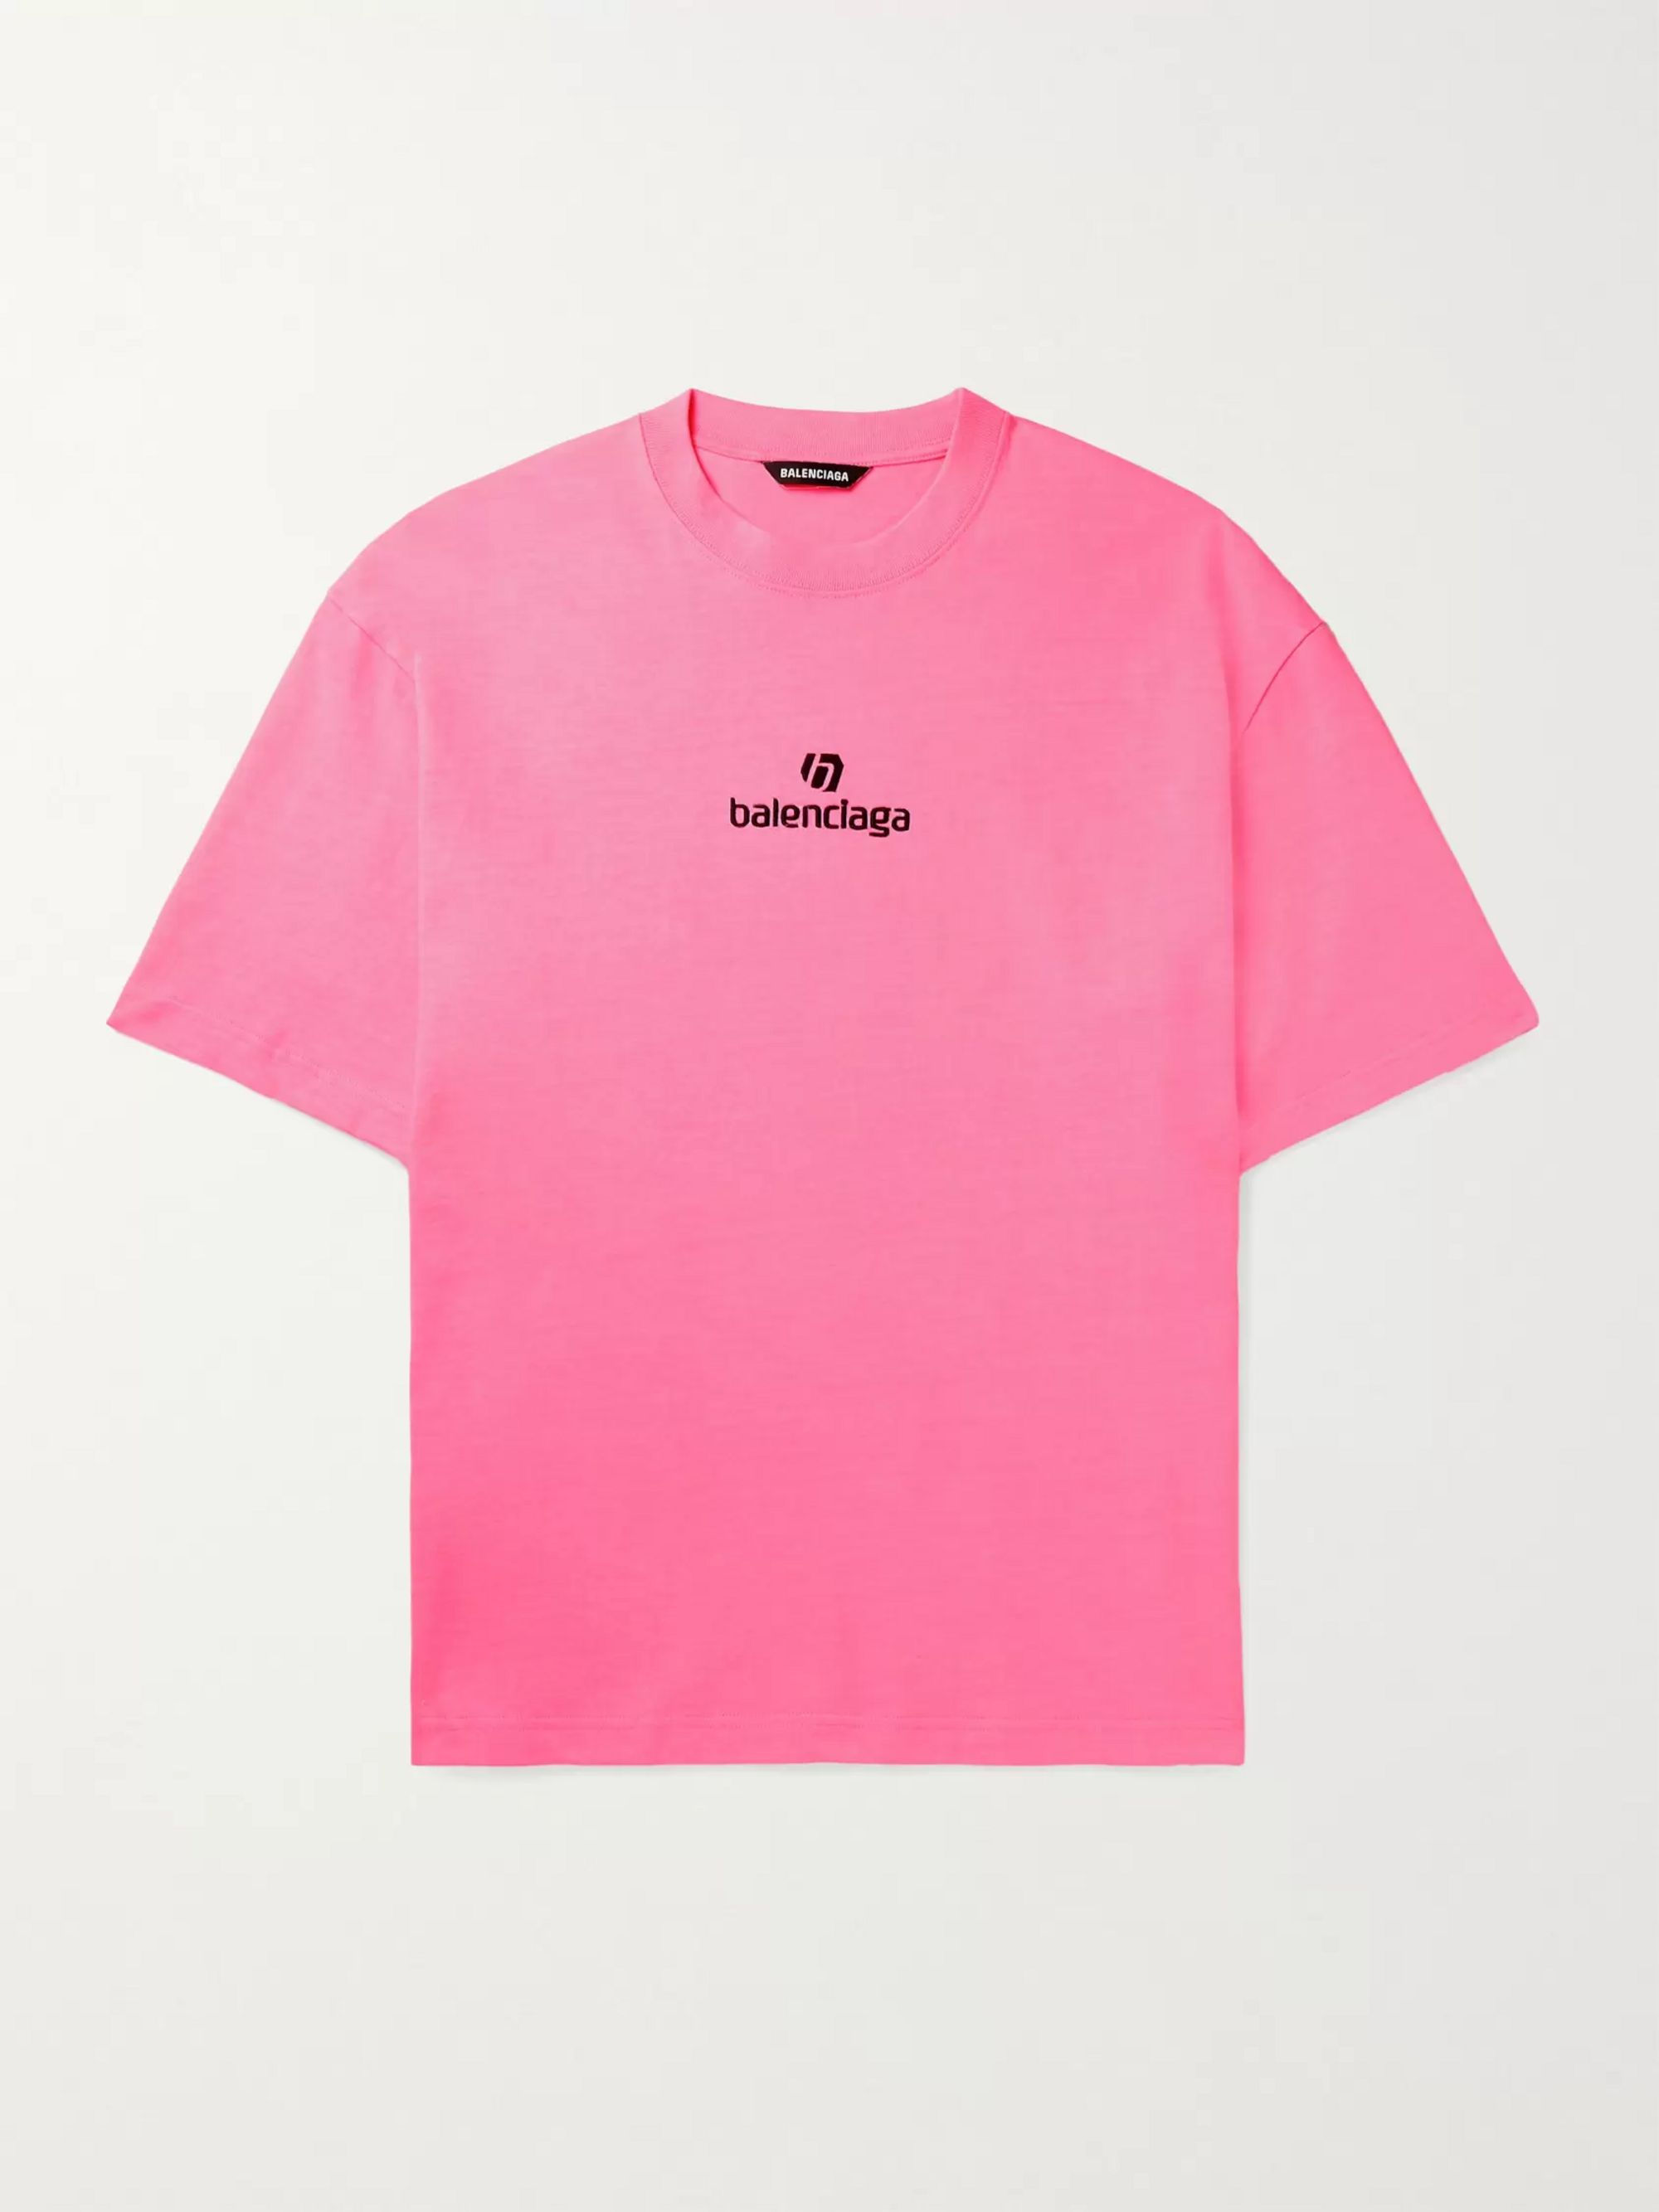 pink balenciaga shirt